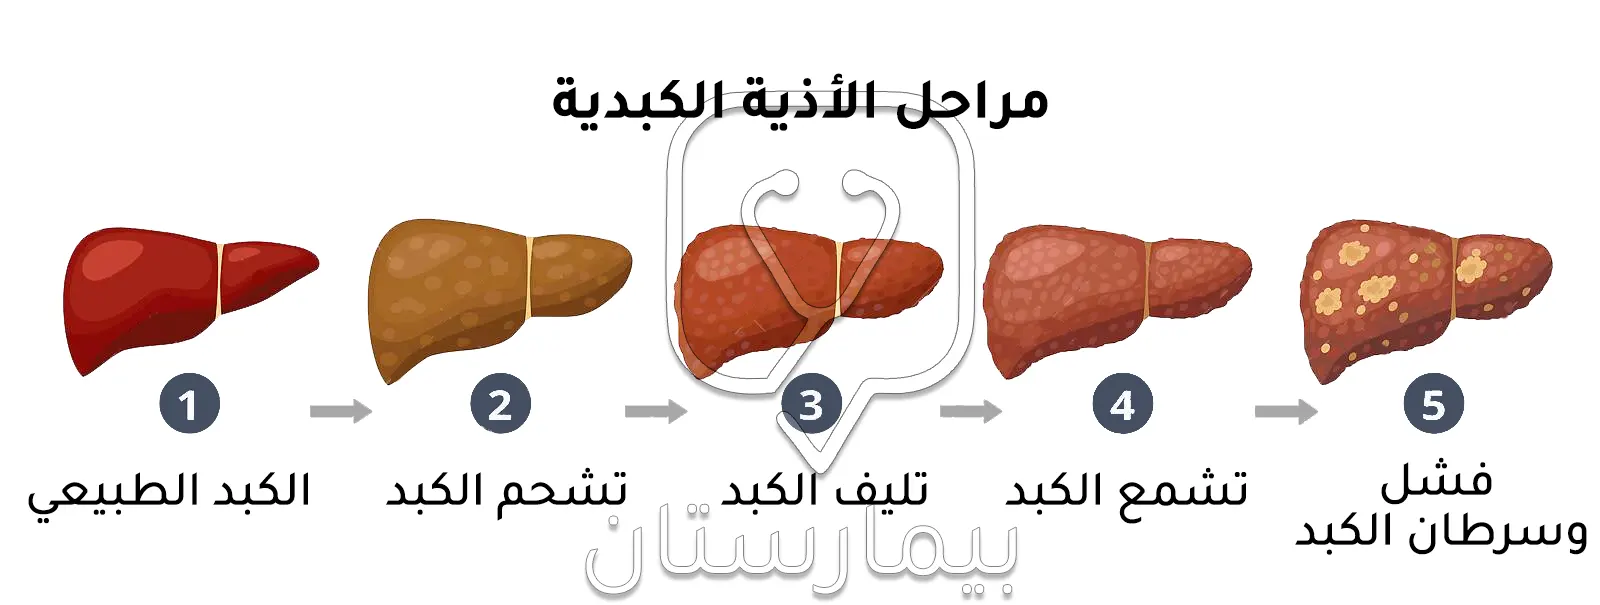 صورة توضح مراحل الأذية الكبدية التي تنتهي بتليف الكبد  وبالتالي تحويل المريض إلى زرع الكبد